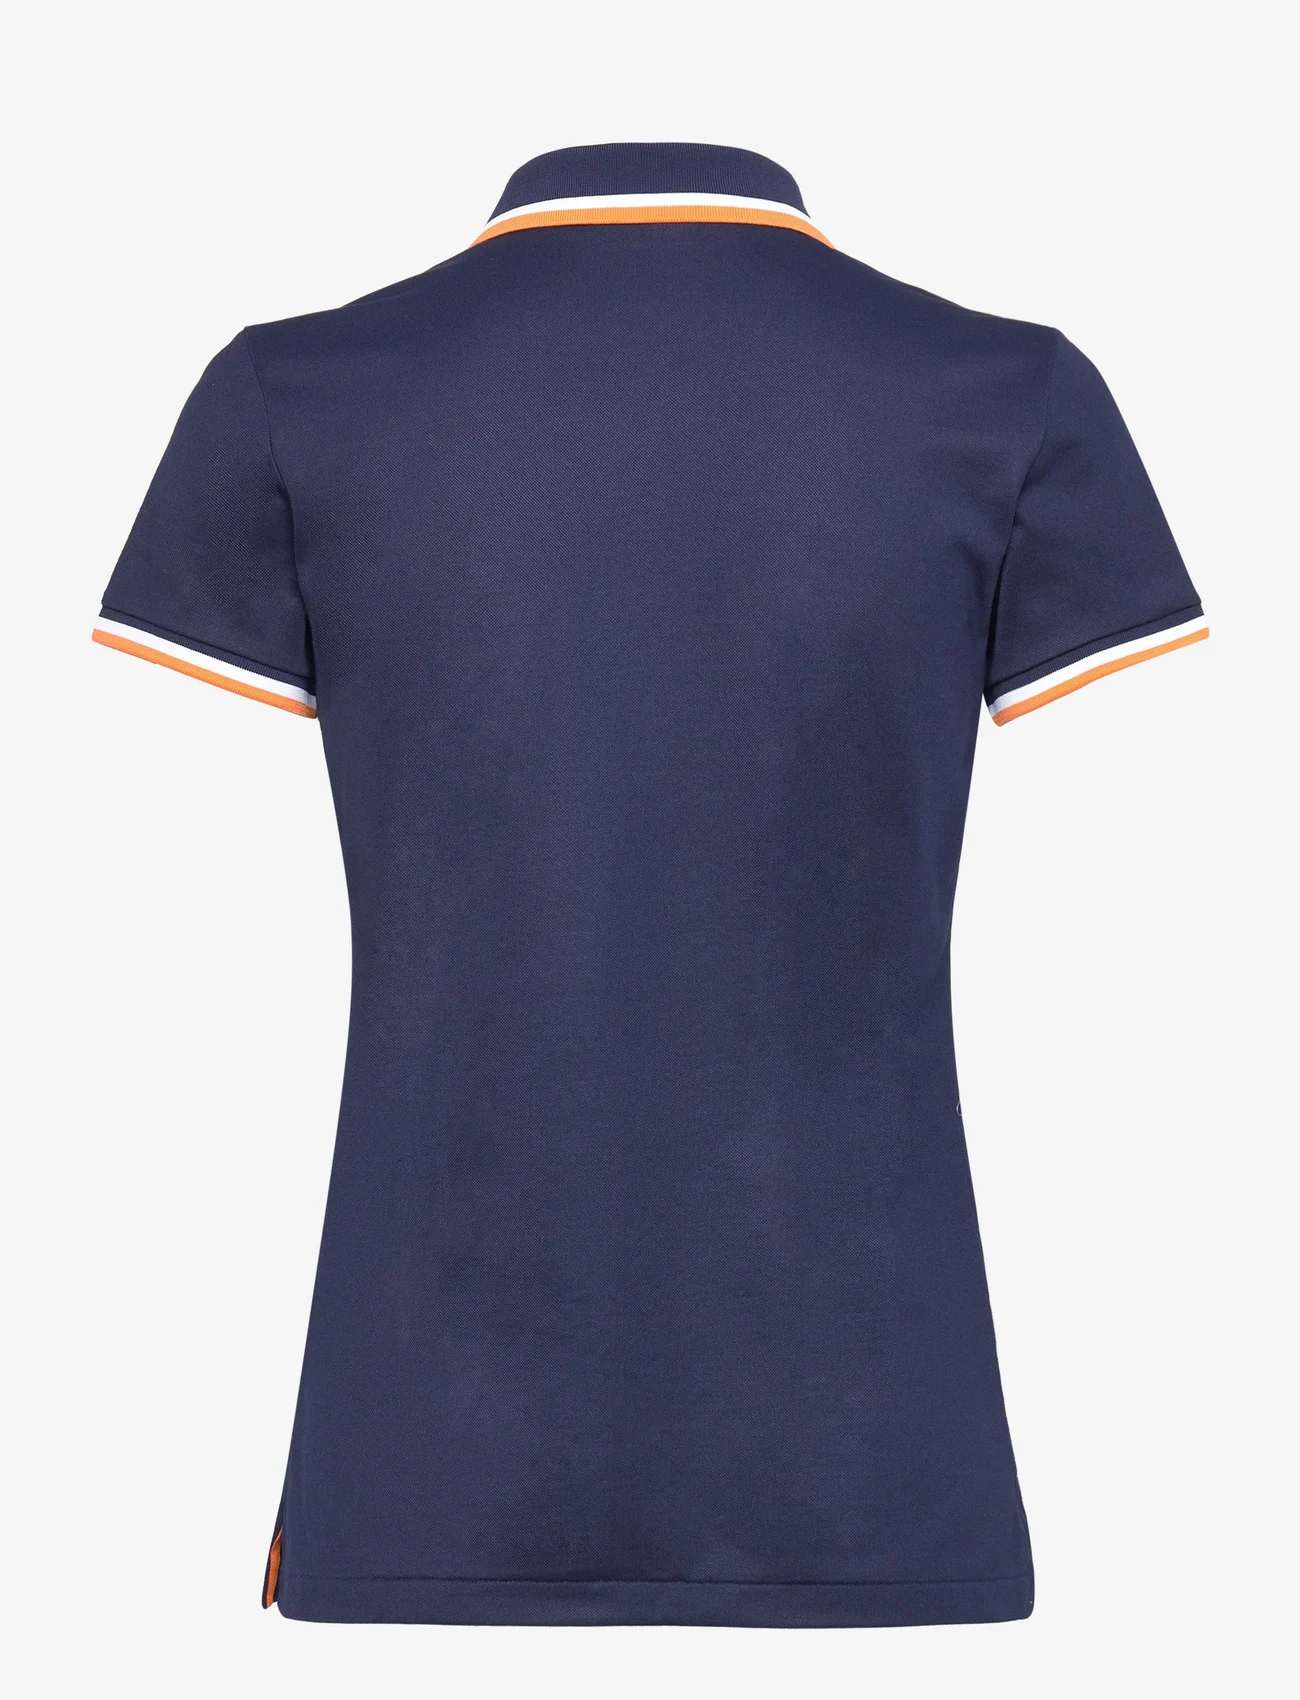 Ralph Lauren Golf - Tailored Fit Jersey Polo Shirt - multi - 1